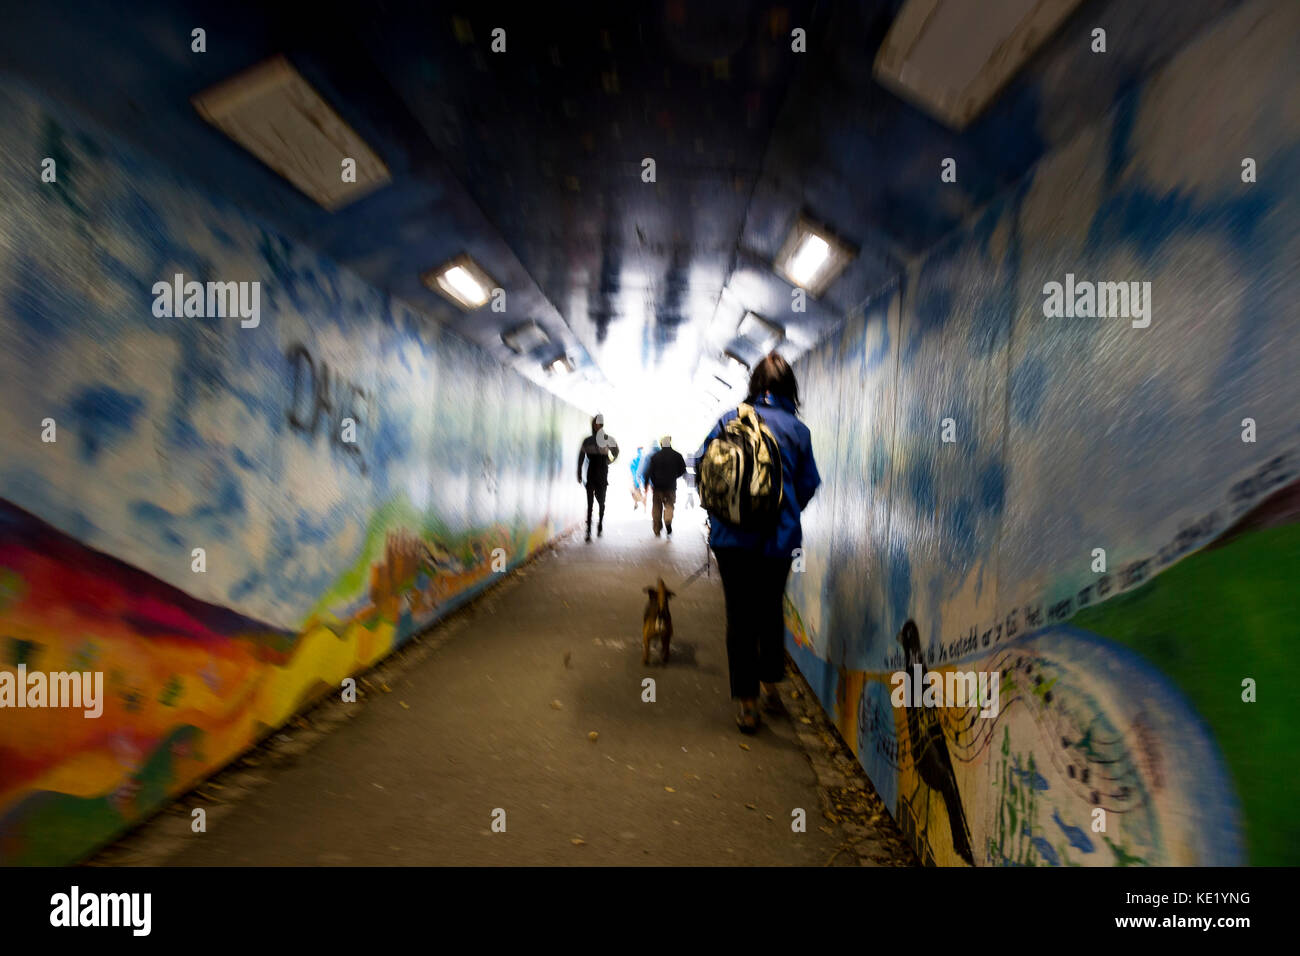 Surreale Ansicht von Fußgängern verschwommene Bewegung im Lackierten graffiti Unterführung Stockfoto